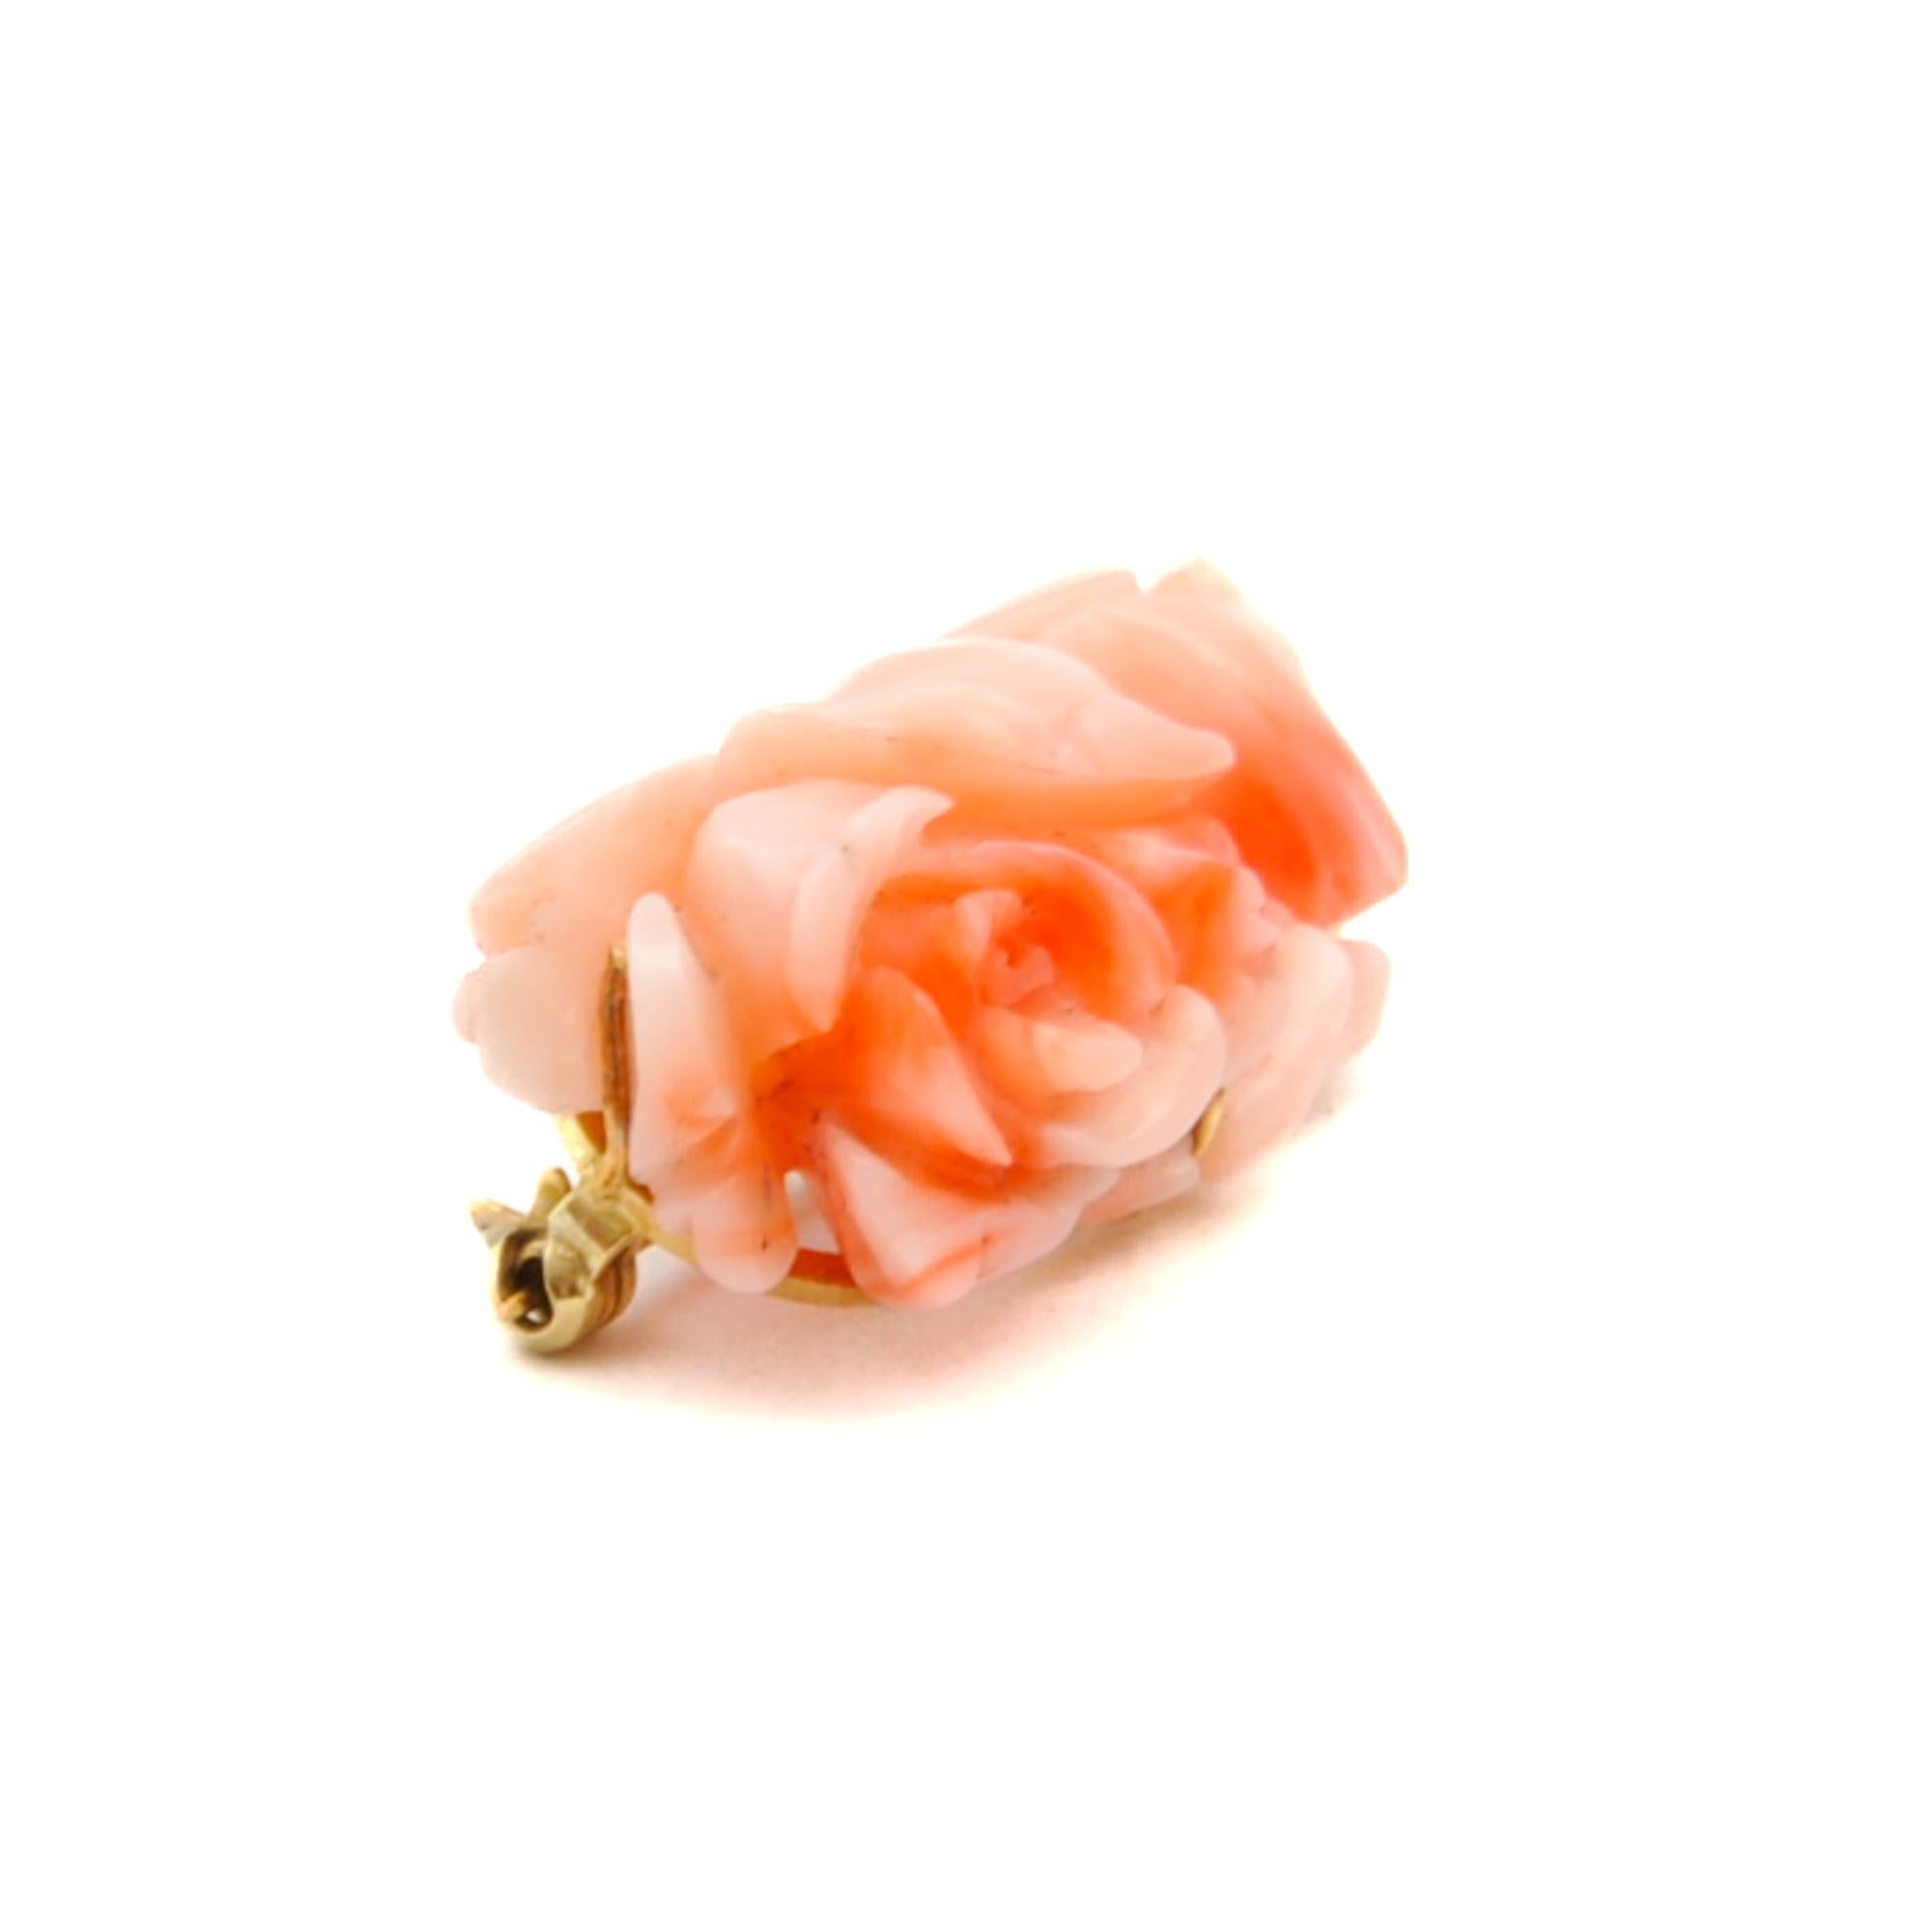 Broche vintage en corail rose sertie dans une monture en or. Le corail est sculpté en une magnifique fleur de rose et fixé à un cadre en or au dos. Le corail est considéré comme un symbole de renouveau, de vitalité et de beauté. La broche contient